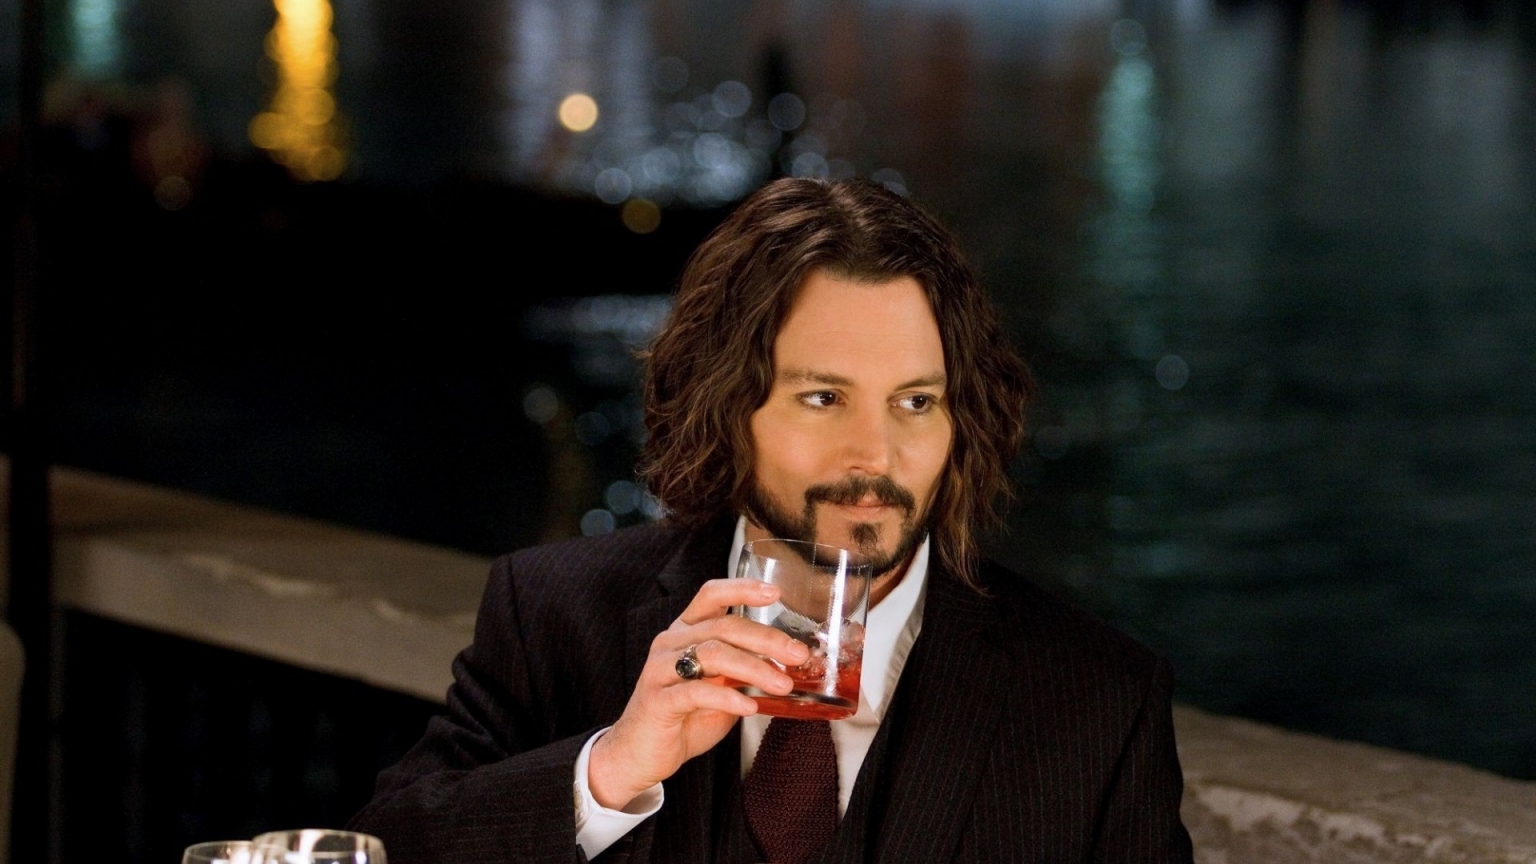 Johnny Depp Drinking for 1536 x 864 HDTV resolution